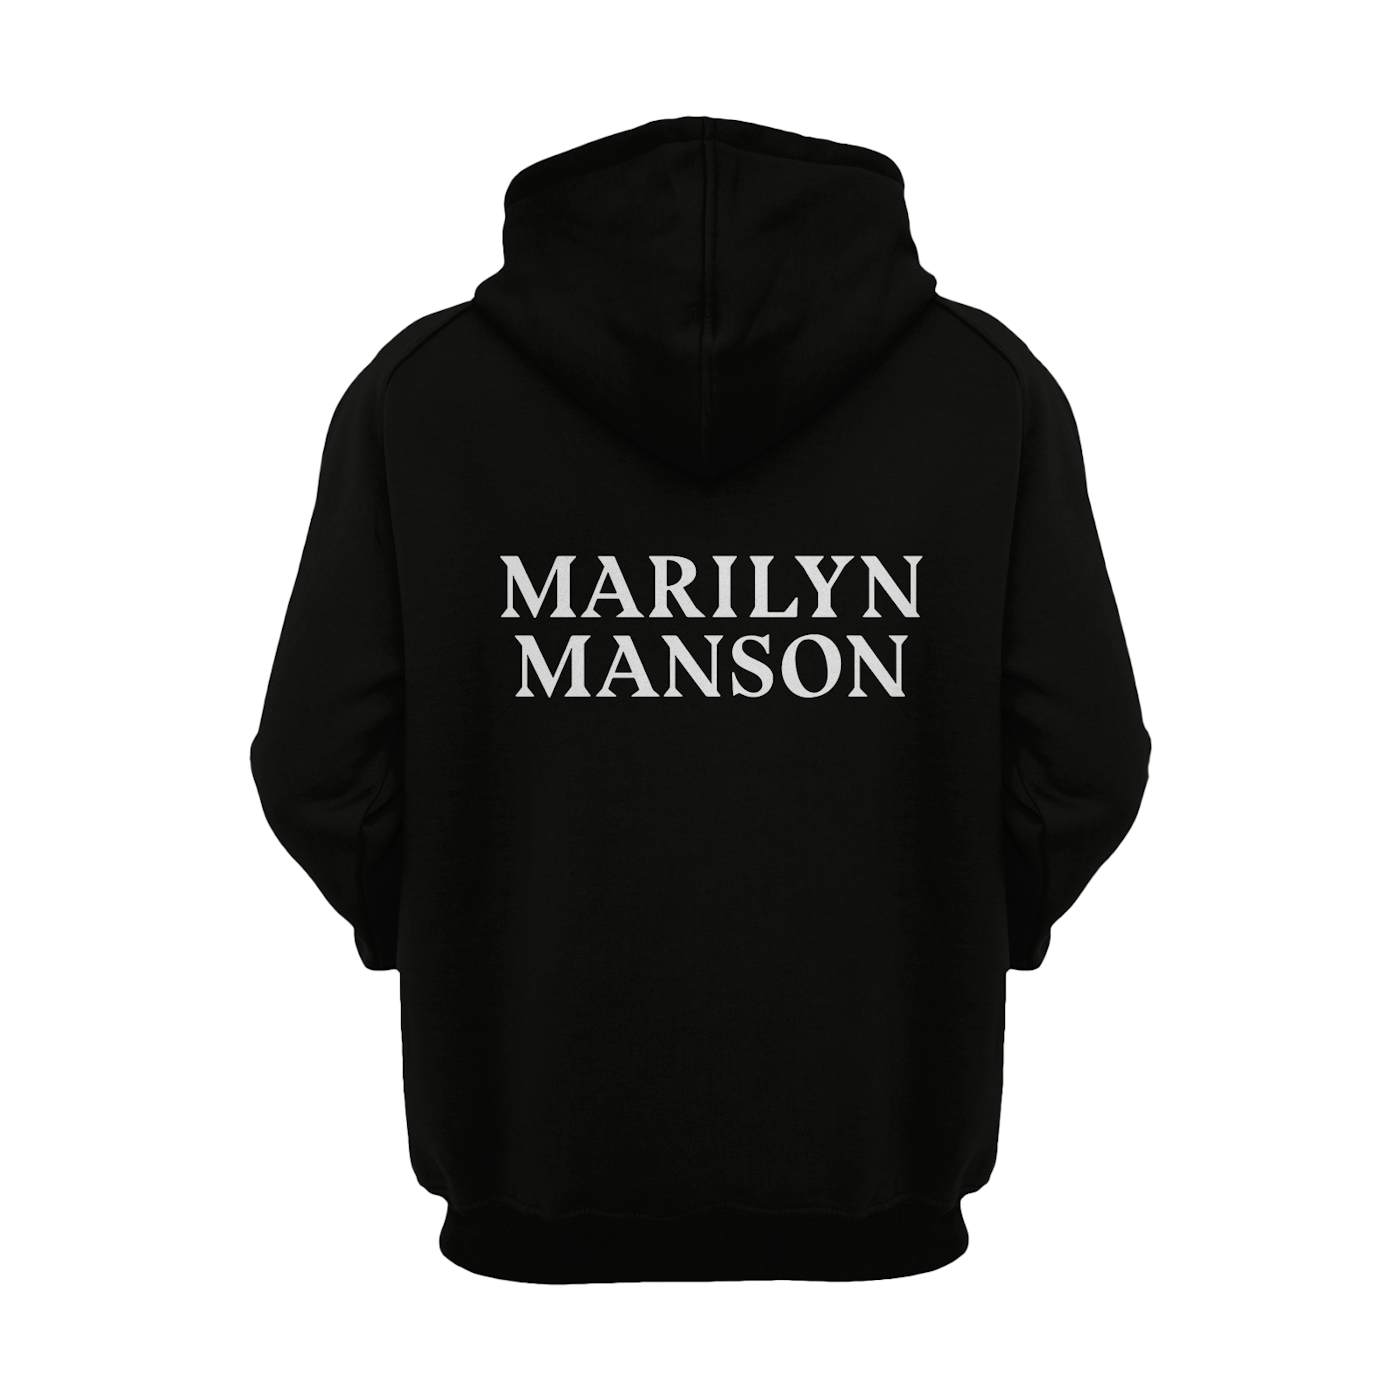 Marilyn Manson Hoodie | Double Cross Marilyn Manson Hoodie